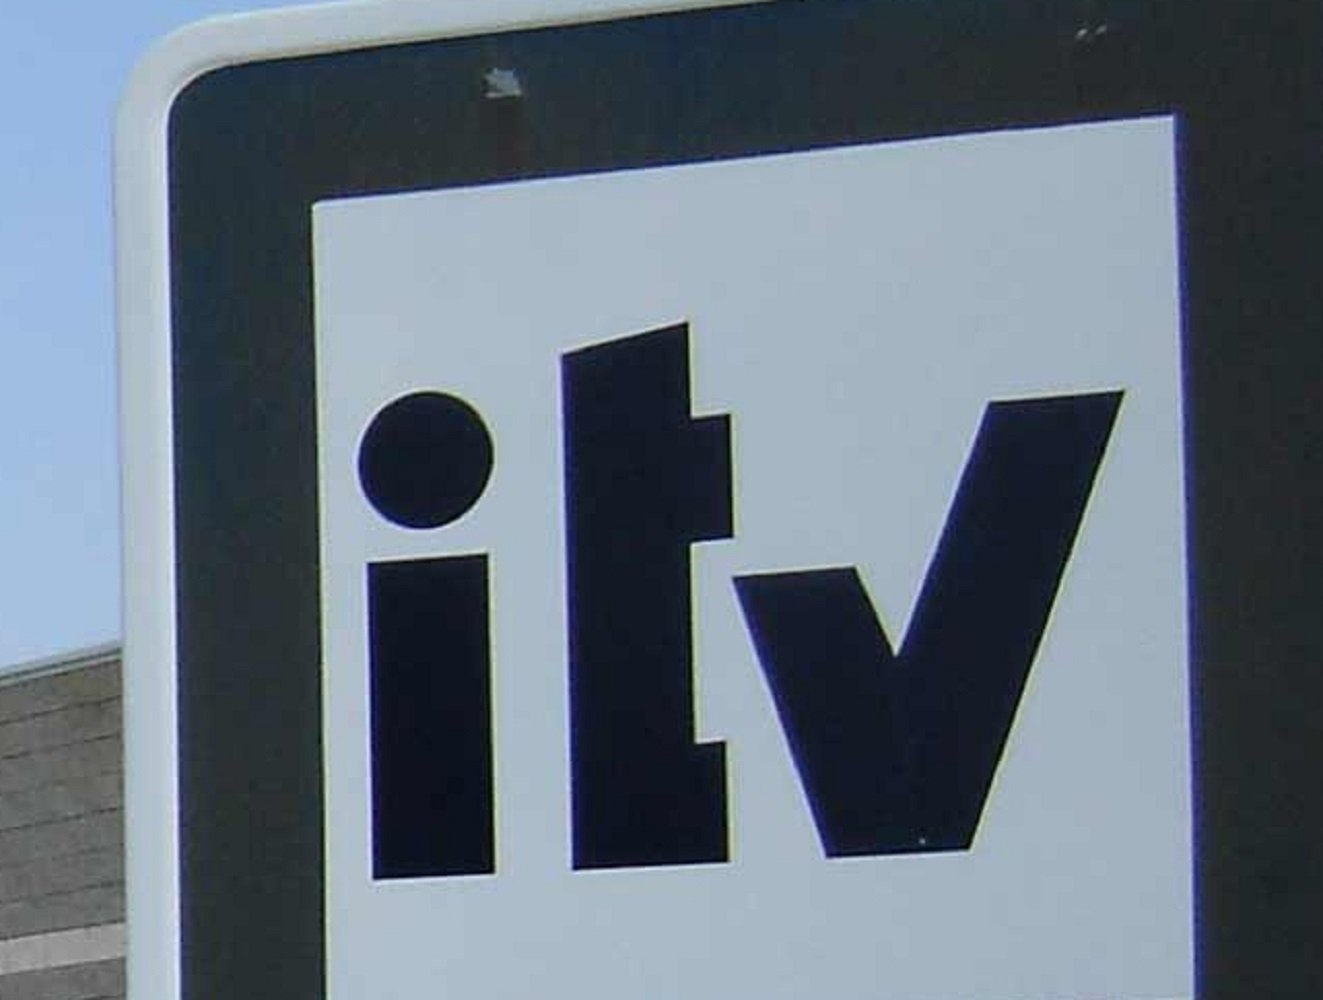 La ITV libera a los coches fabricados o matriculados antes del 1 de enero de 1950